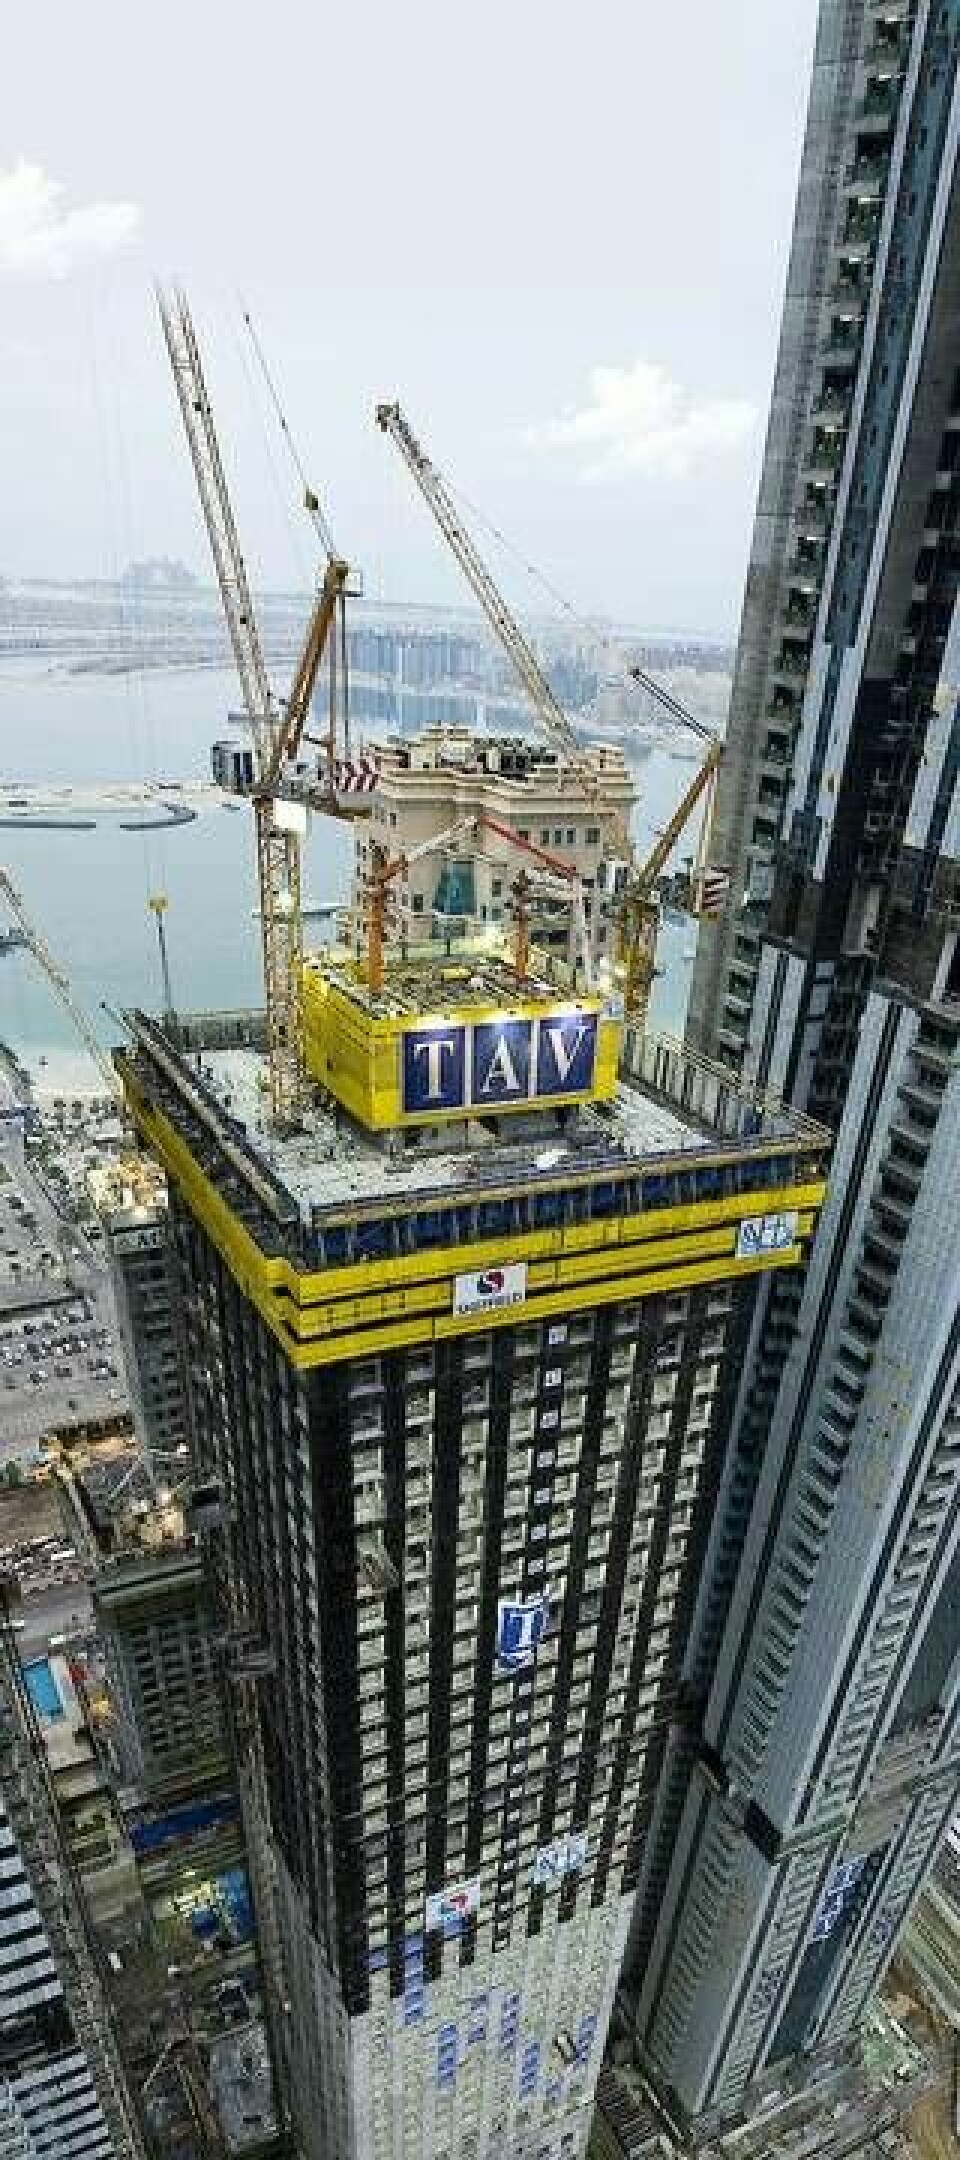 En klätterform kommer att användas för att gjuta byggnadens kärna. Här syns en liknande klätterform vid ett bygge i Dubai. Foto: Doka